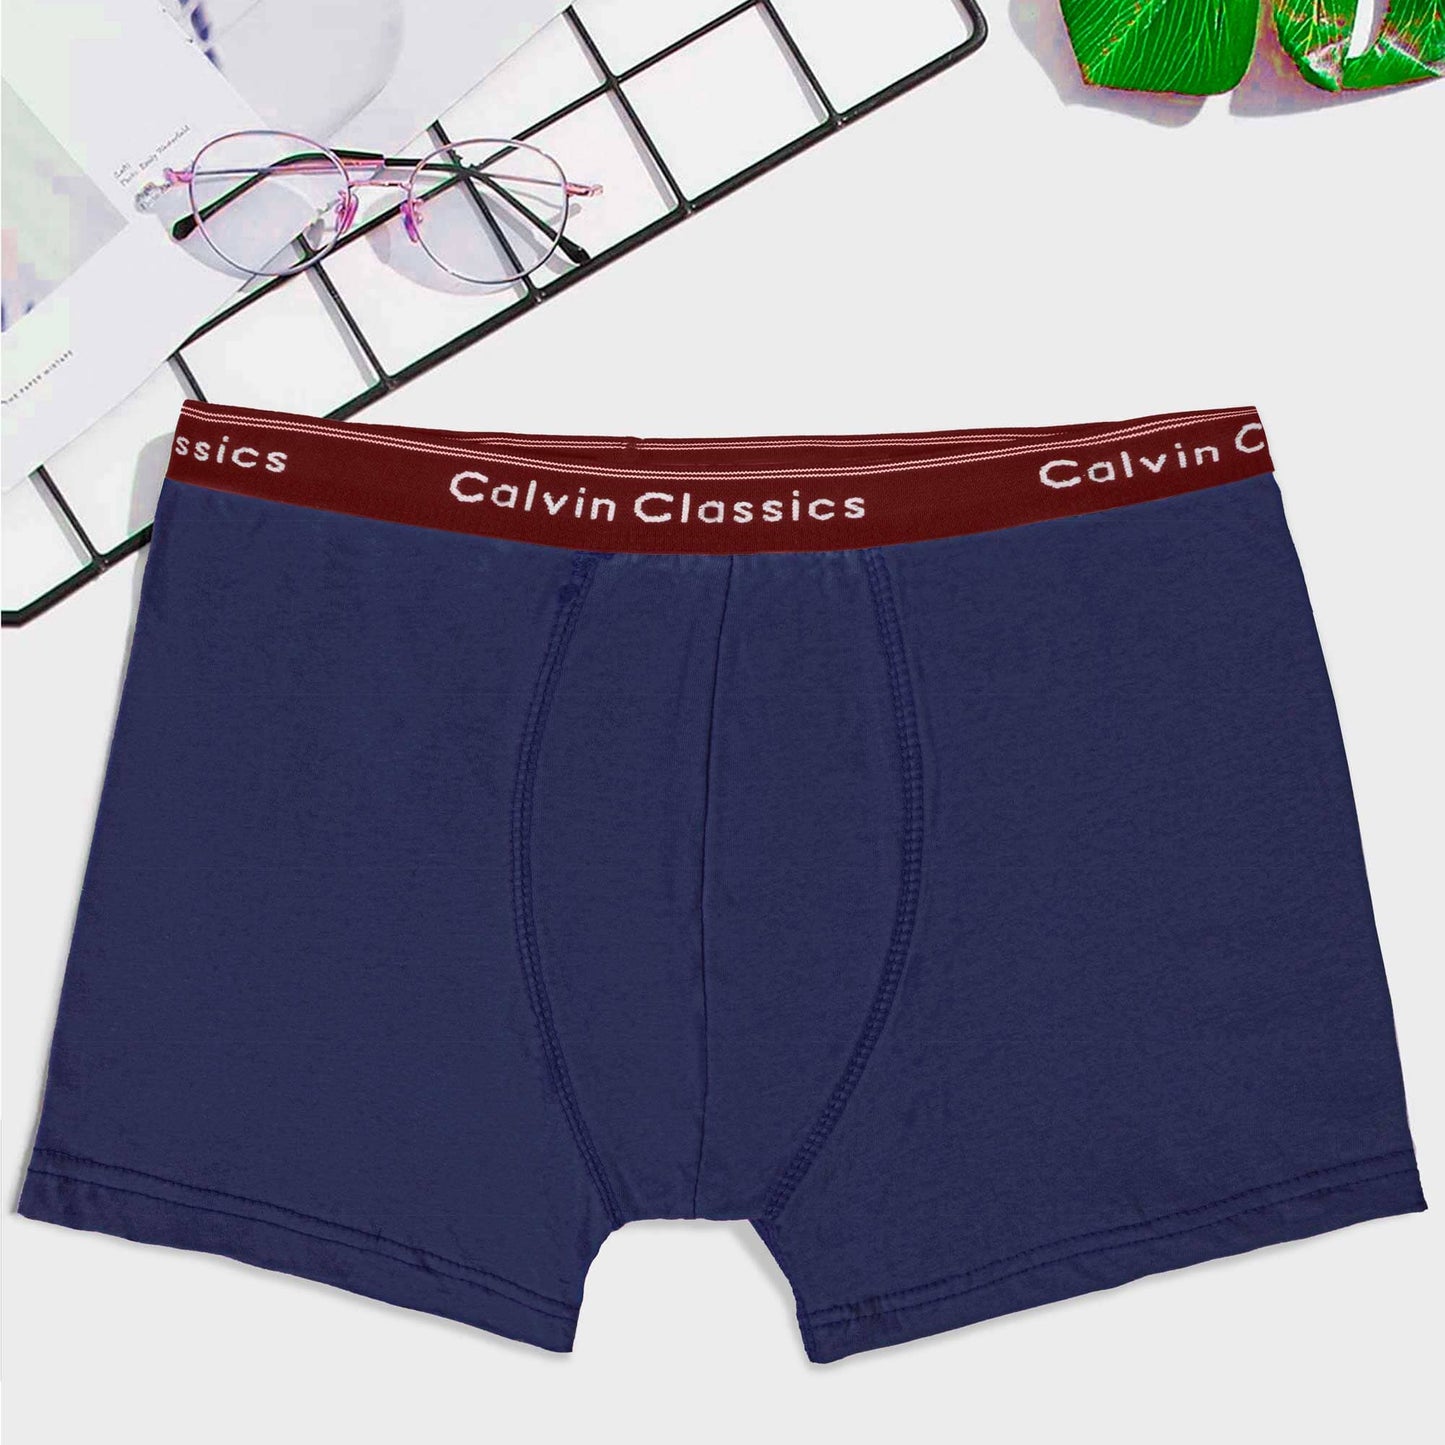 Calvin Classic Men's Boxer Shorts Men's Underwear SZK Jeans Marl S 